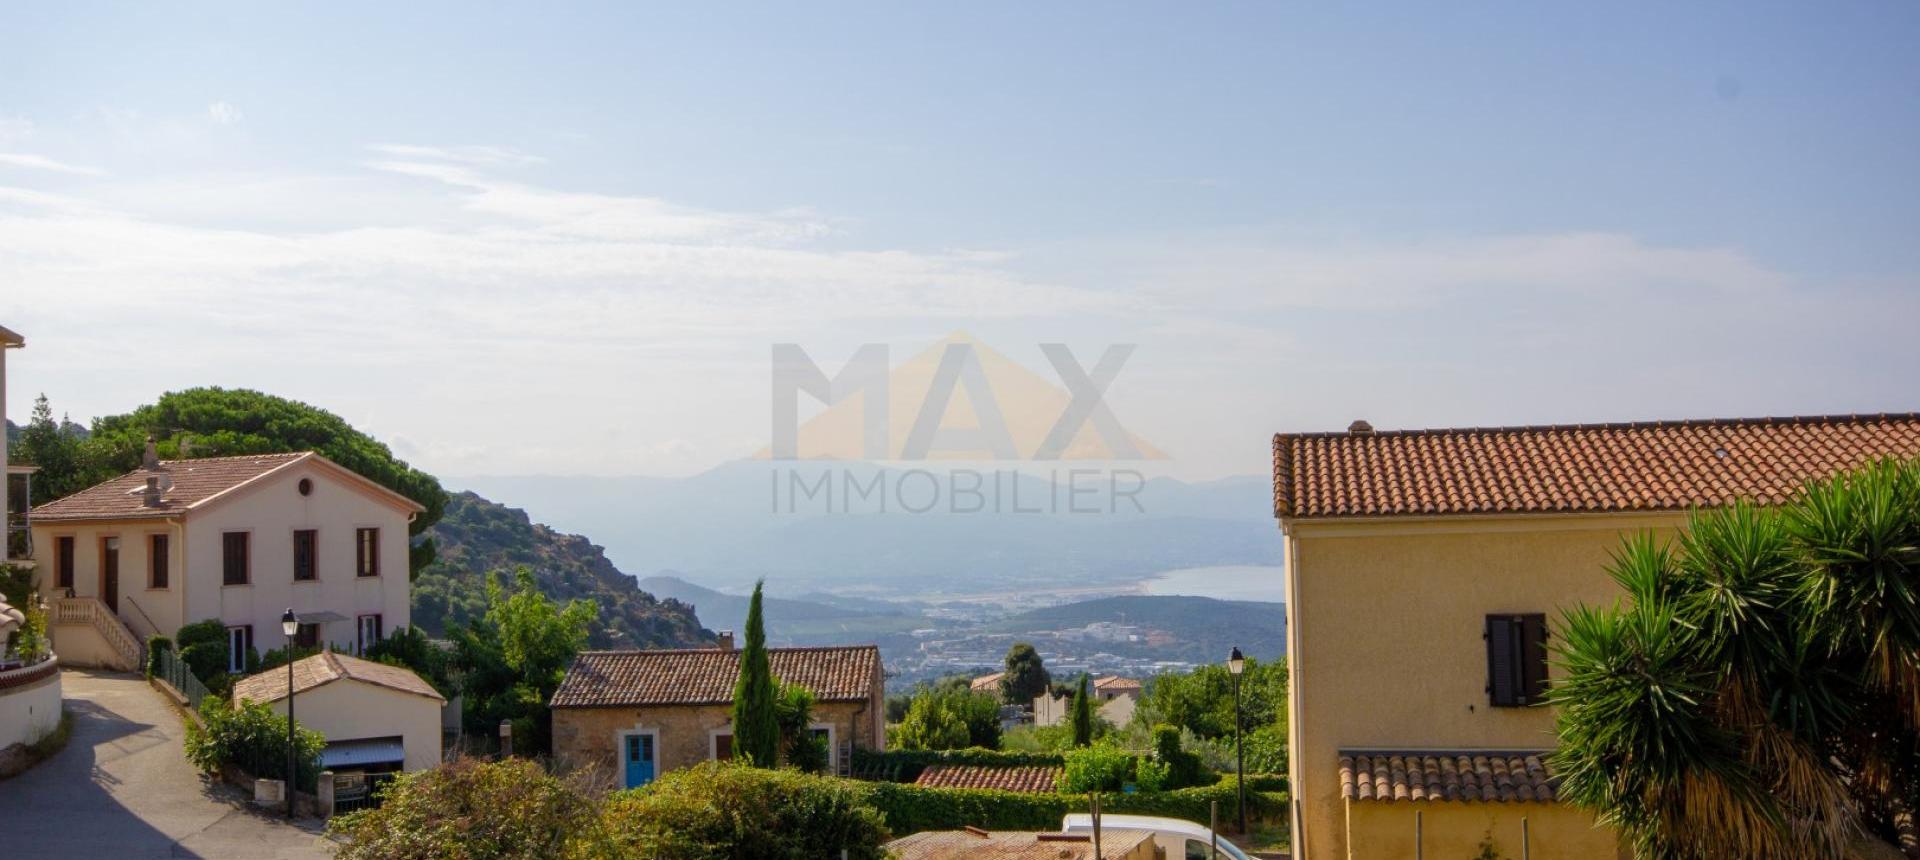 En Corse, à proximité d’AJACCIO, à ALATA, Vente d'un appartement de 110 m2 habitables au cœur du village.